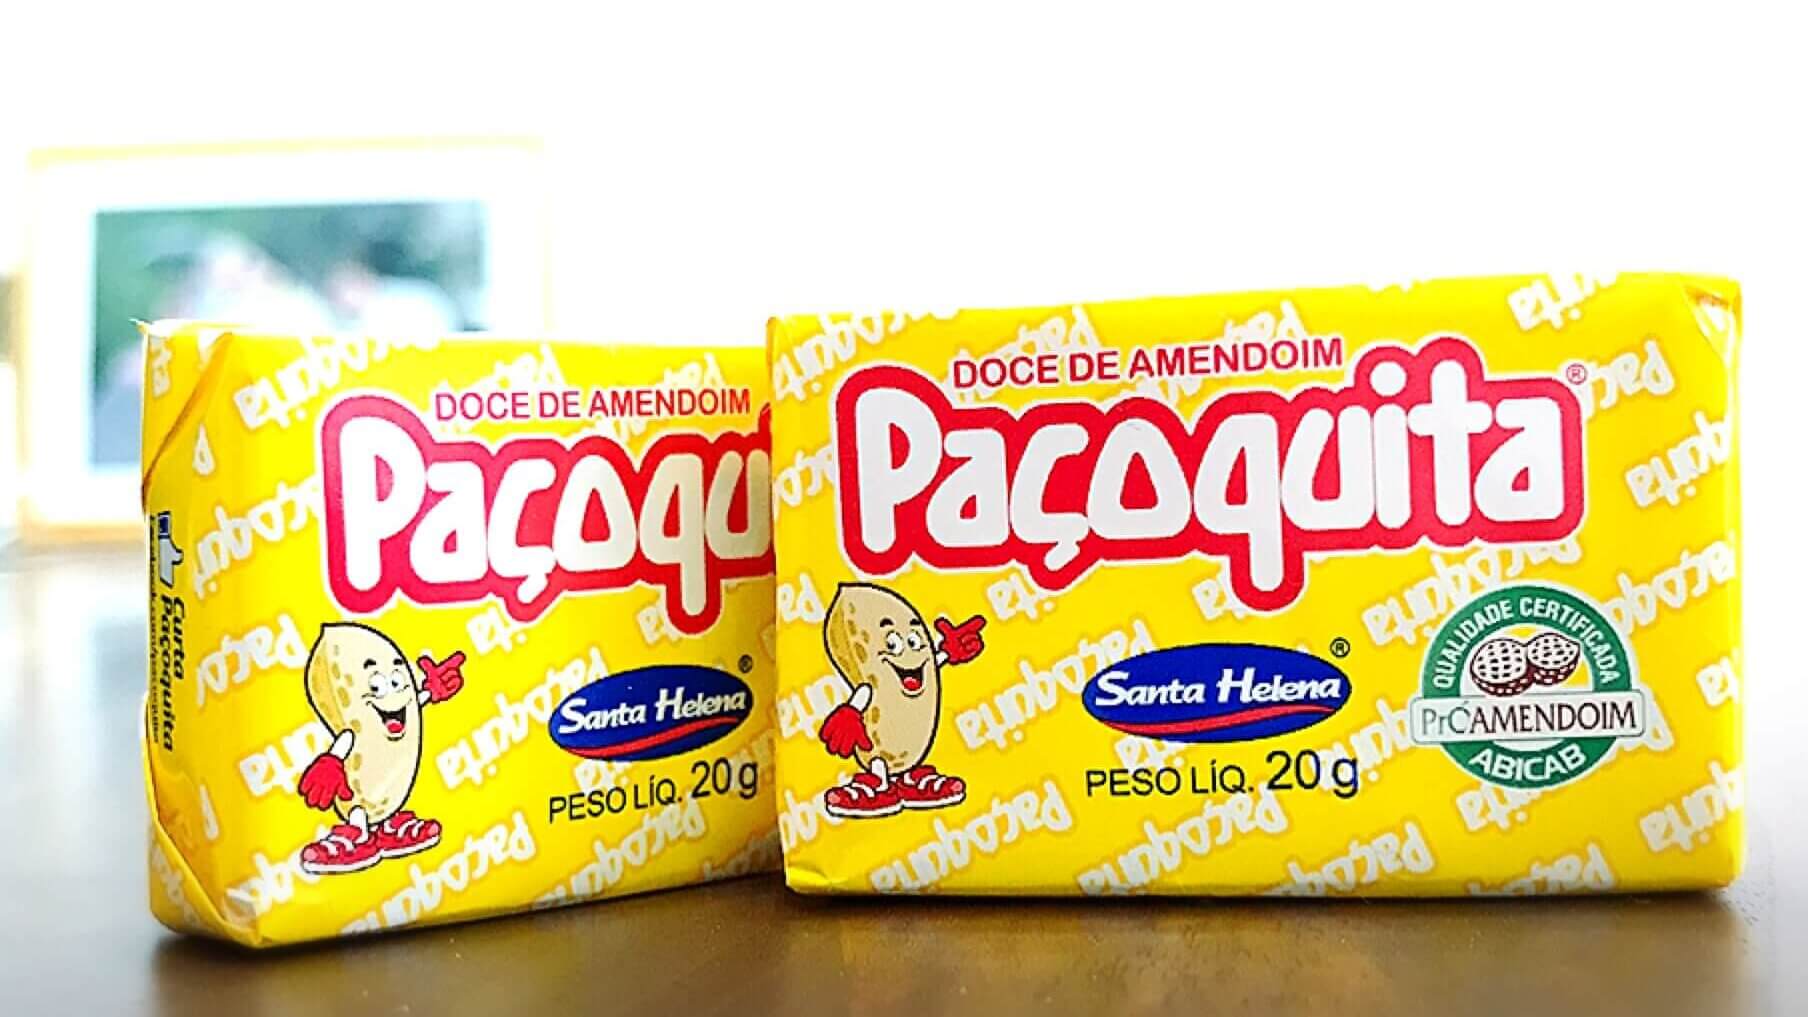  ブラジルのピーナツ菓子「パソキッタPaçoquita」